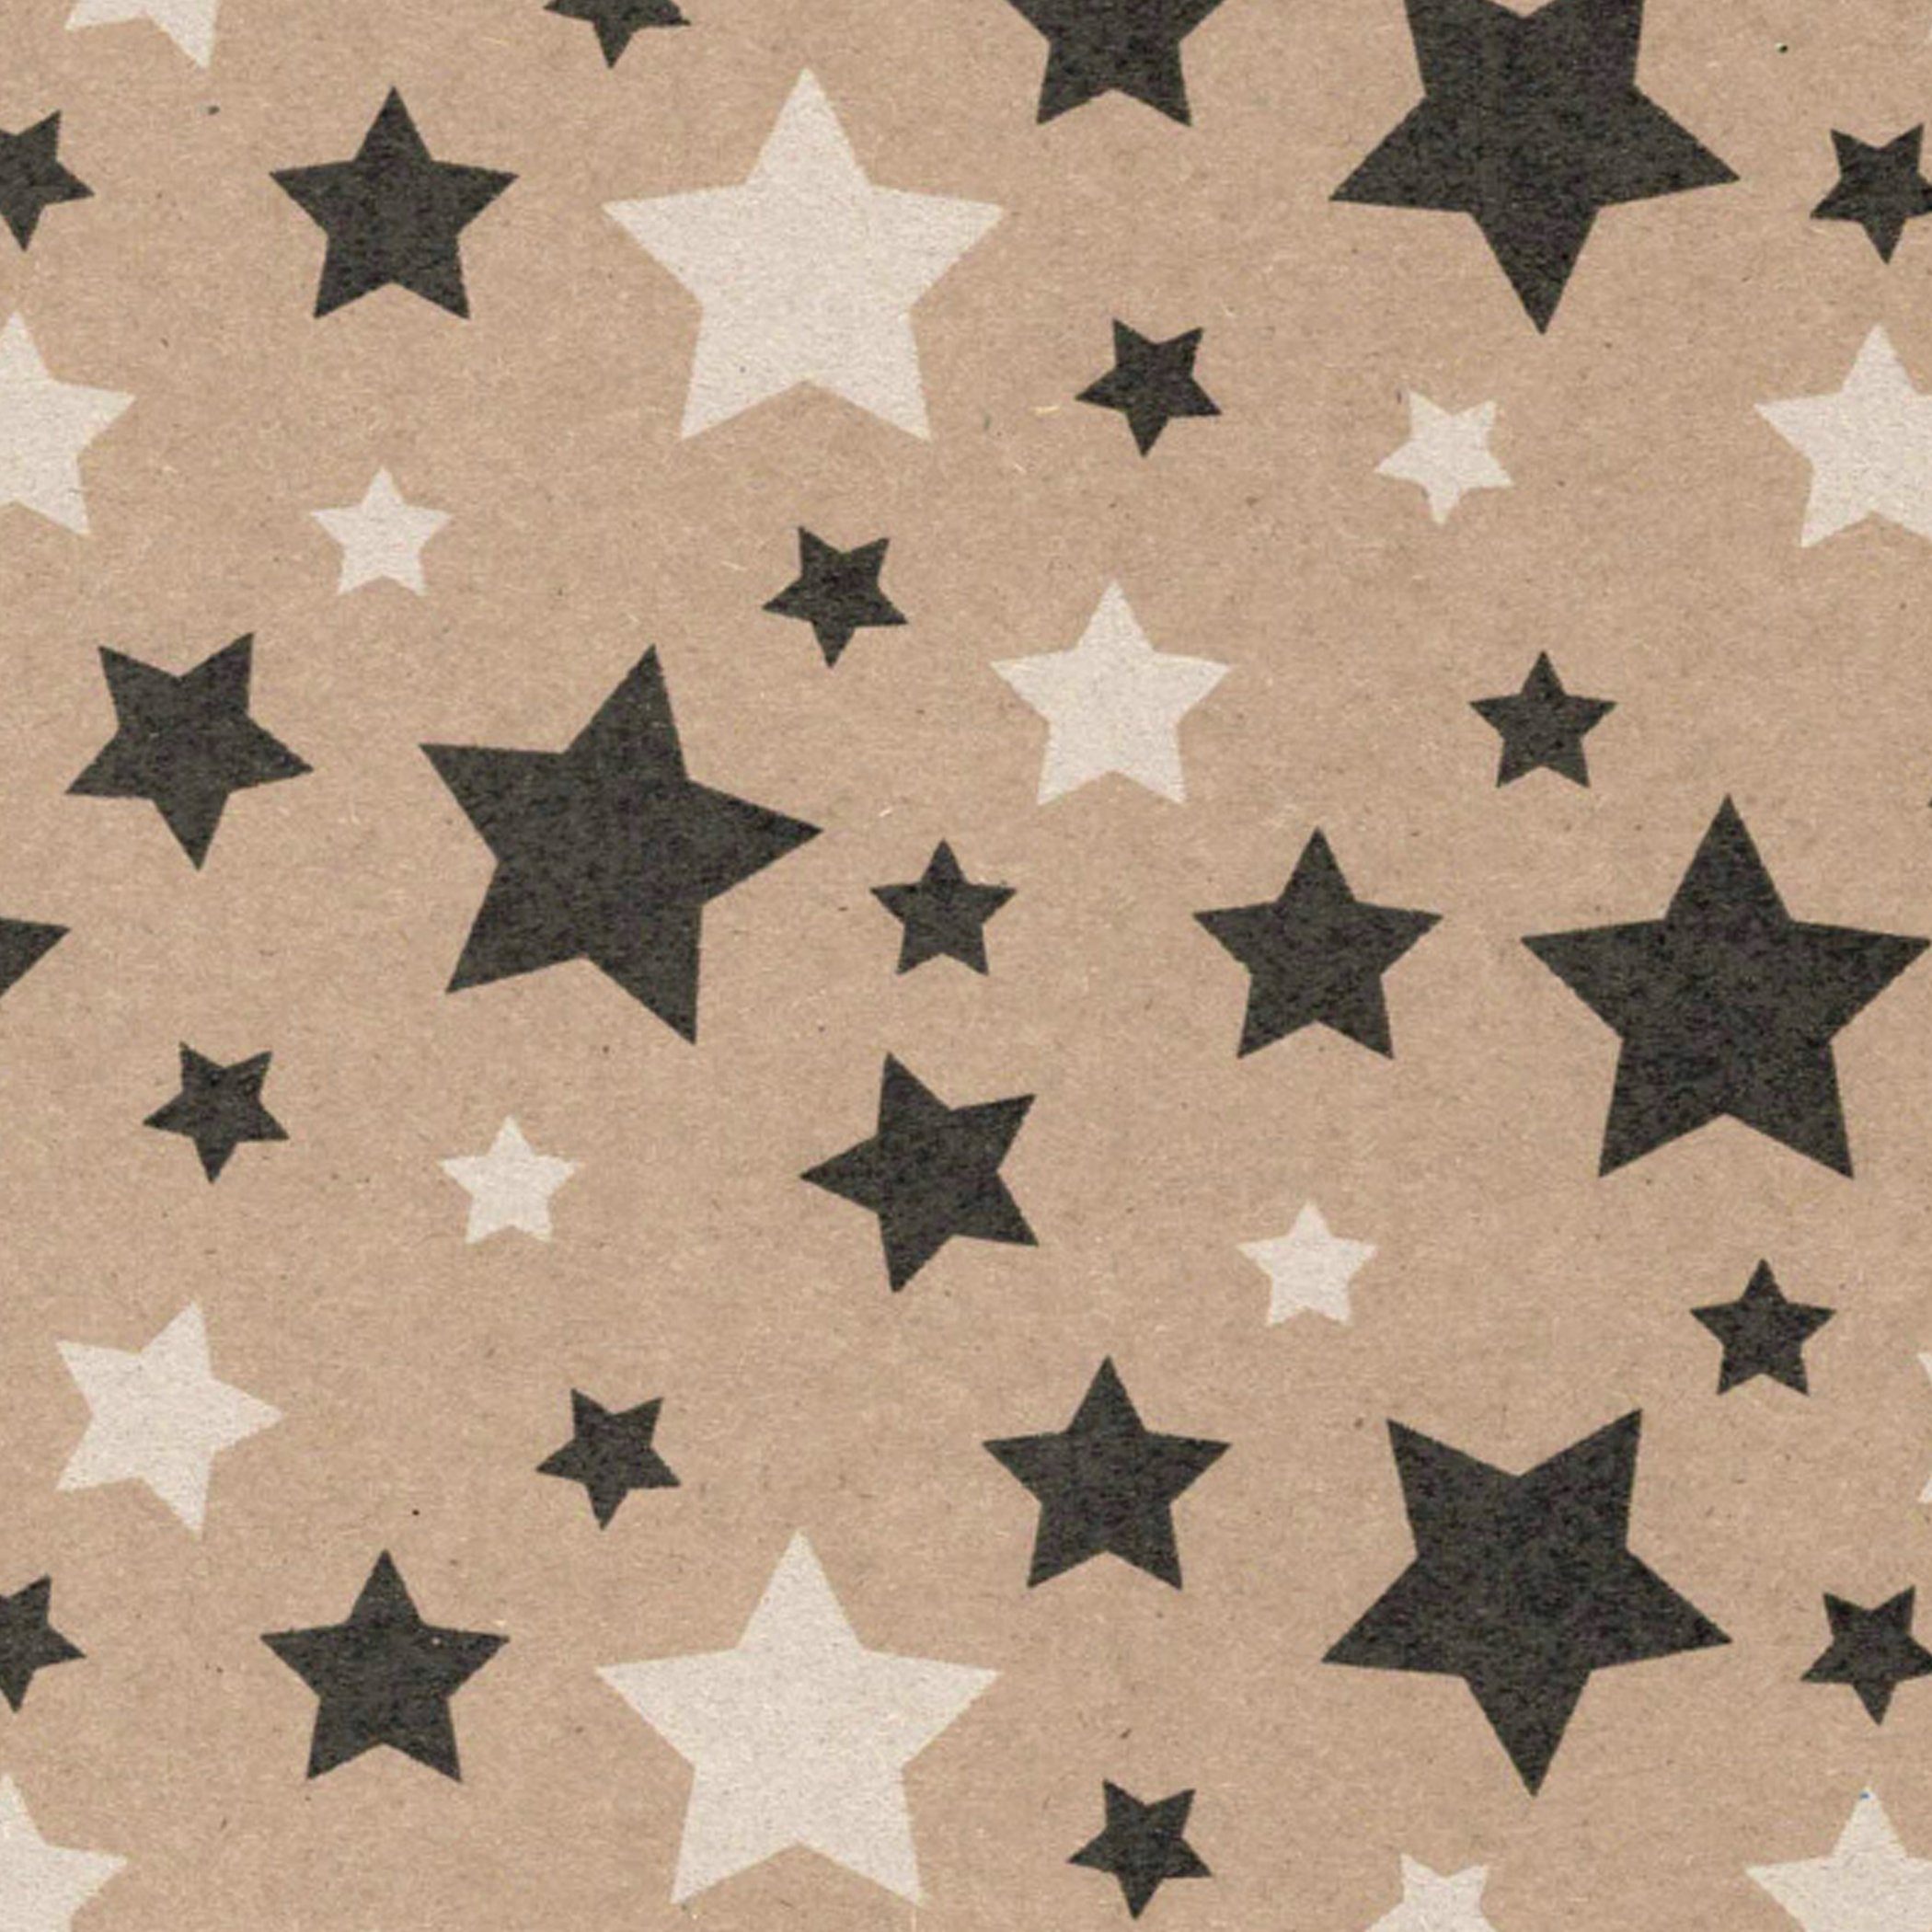 Star Geschenkpapier, Geschenkpapier mit Sterne Muster 70cm x 2m Rolle natur braun